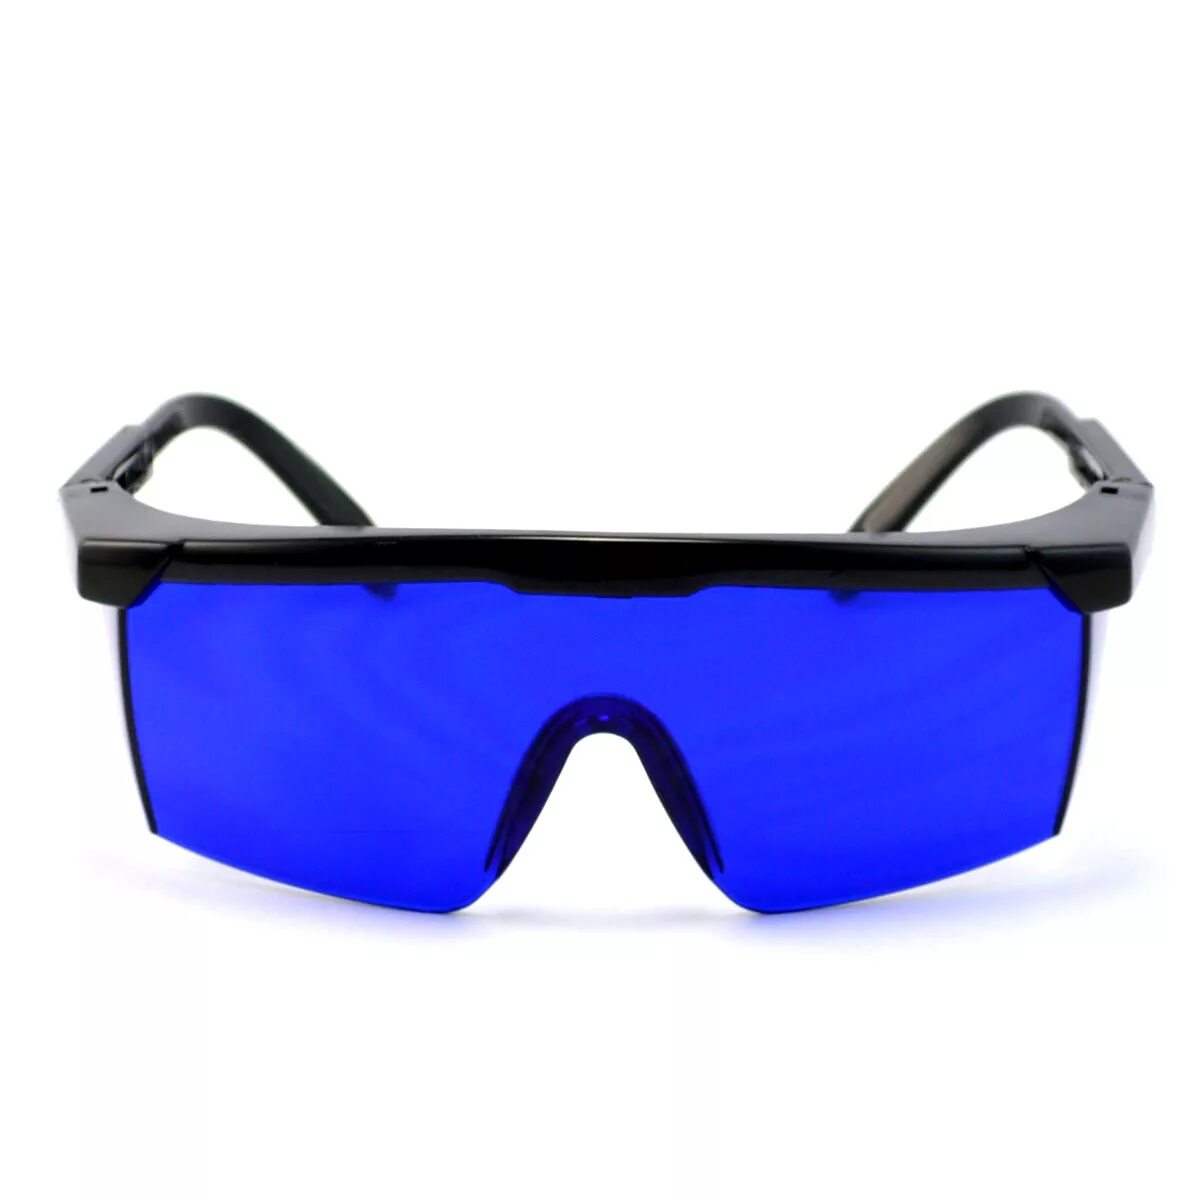 Купить синие очки. Синие очки. Синие солнцезащитные очки. Очки с синими линзами мужские. Очки синие стекла.